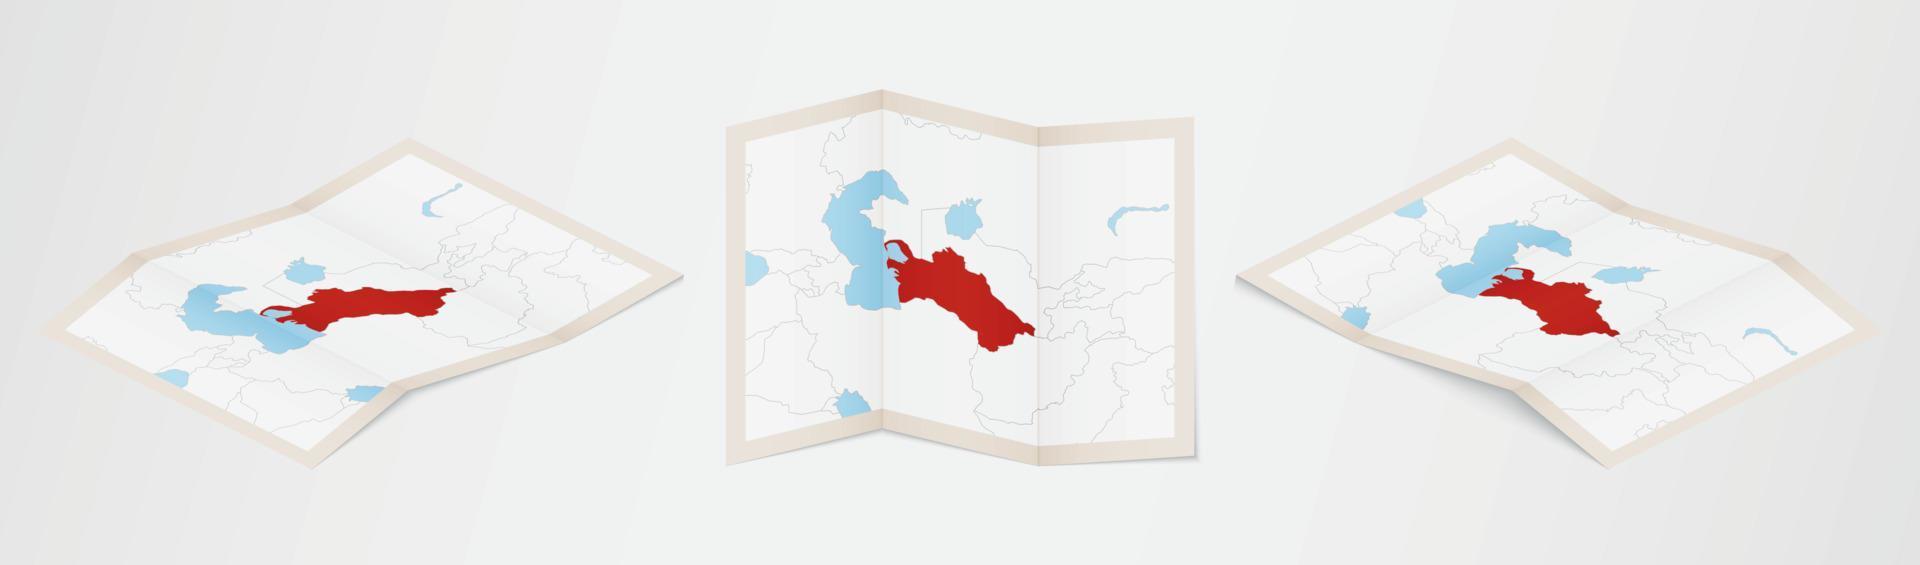 piegato carta geografica di turkmenistan nel tre diverso versioni. vettore